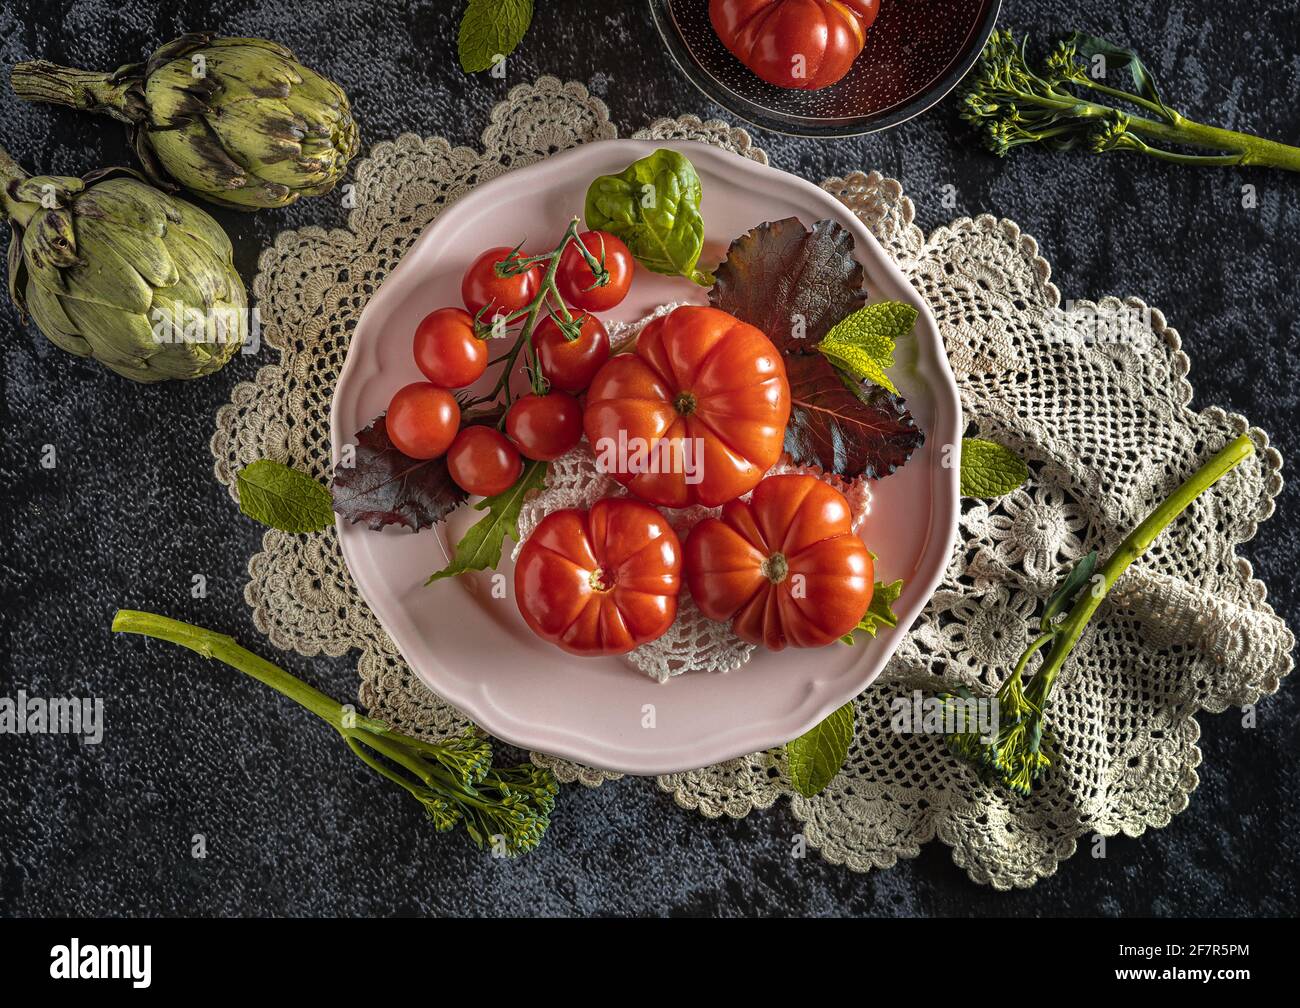 Moody fotografia di cibo scuro di pomodori raf freschi, bimi e carciofi. Immagine piatta con un aspetto vintage e uno sfondo nero. Foto Stock